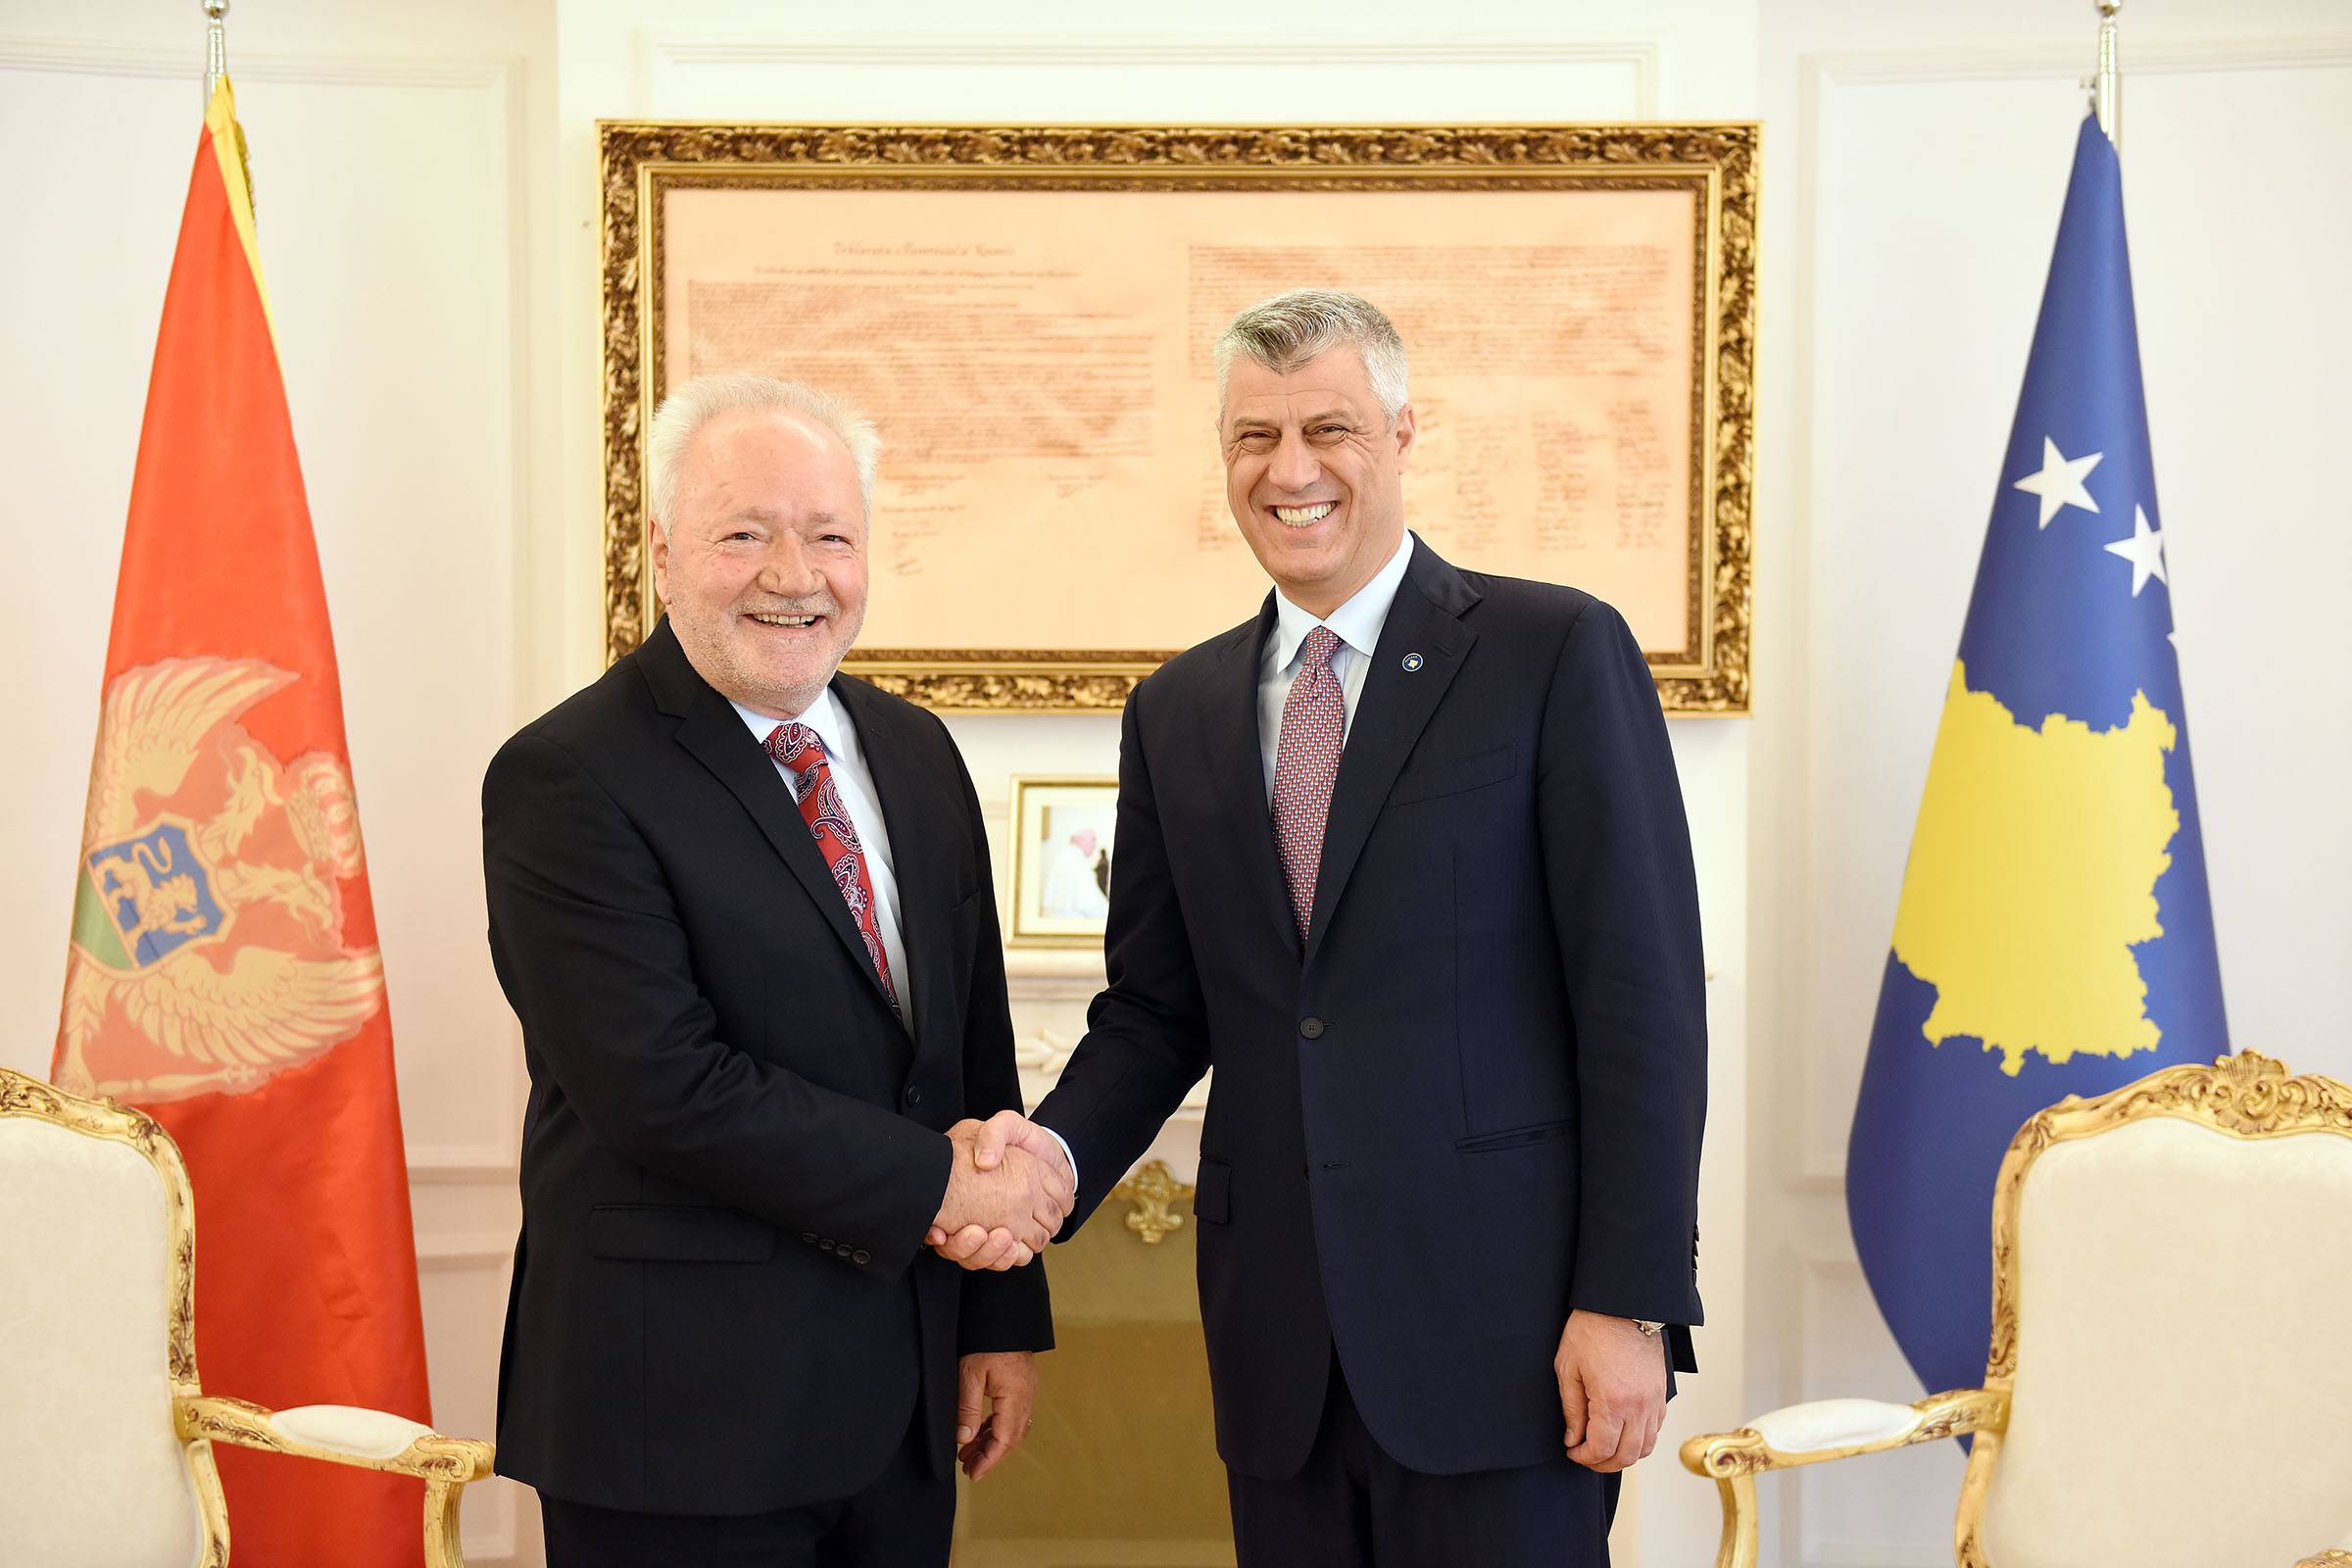 Presidenti Thaçi pranoi kredencialet ambasadorit të Malit të Zi  